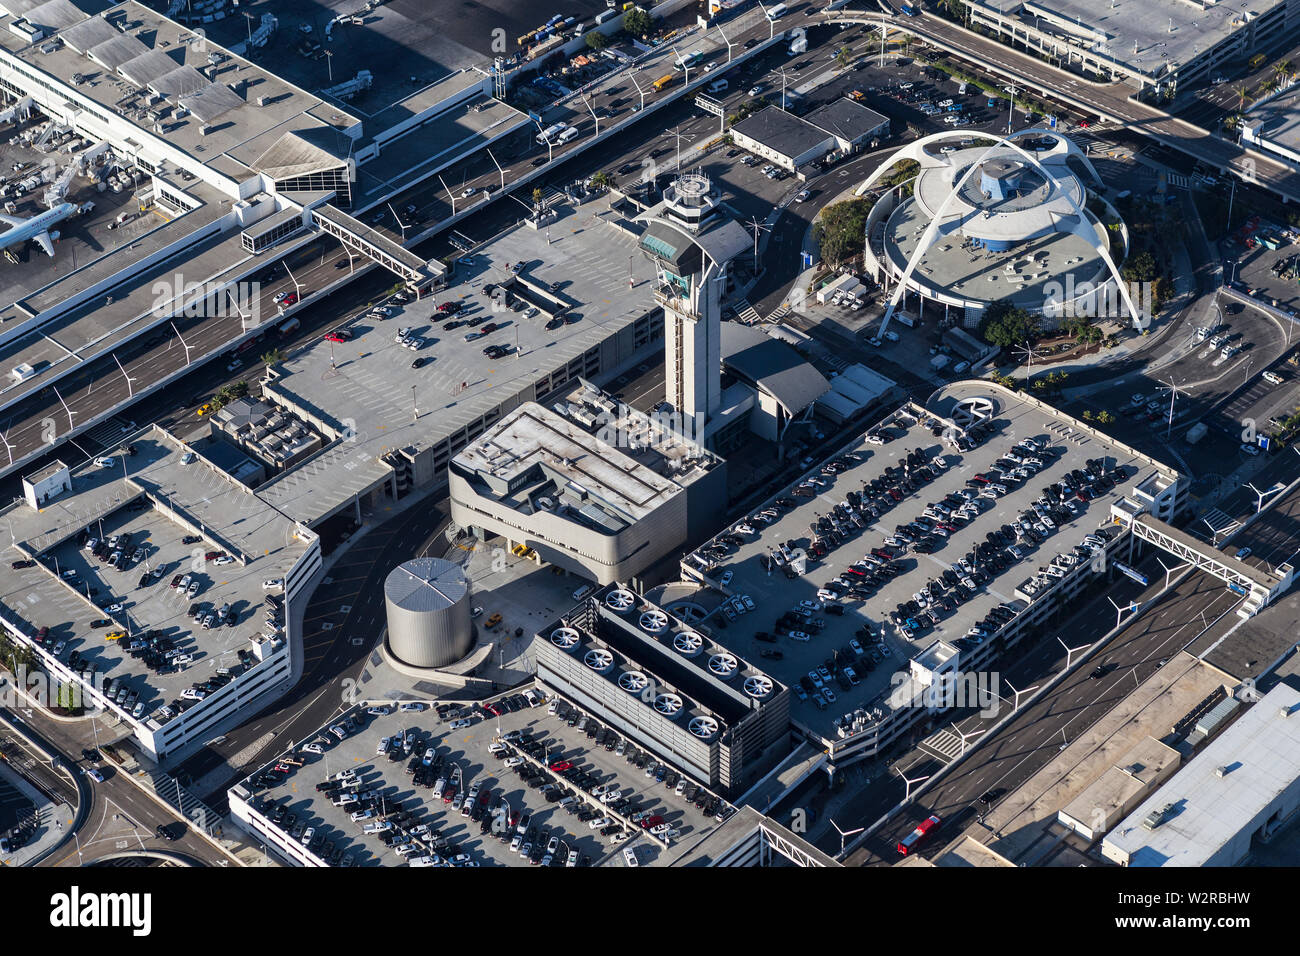 Los Angeles, Californie, USA - 16 août 2016 : Vue aérienne de garages de stationnement de courte durée, les routes, tour de contrôle et moderniste thème bâtir. Banque D'Images